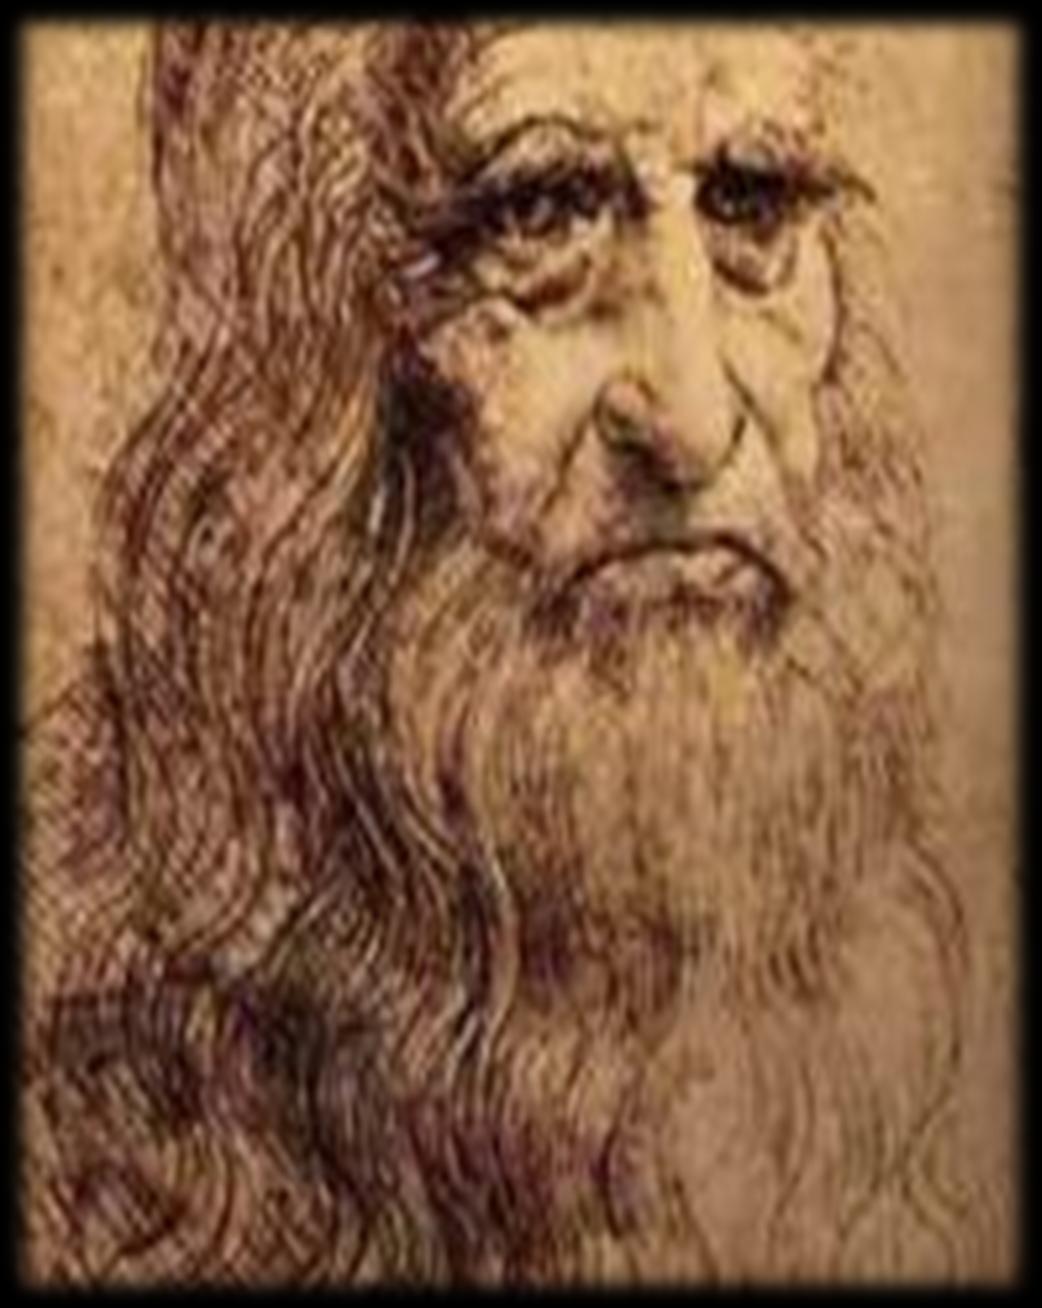 Biografia O grande Leonardo da Vinci, talvez o maior artista do Renascimento, era um personagem exercia atividade em várias áreas: pintor, arquiteto, cientista, matemático, poeta, músico e, não menos